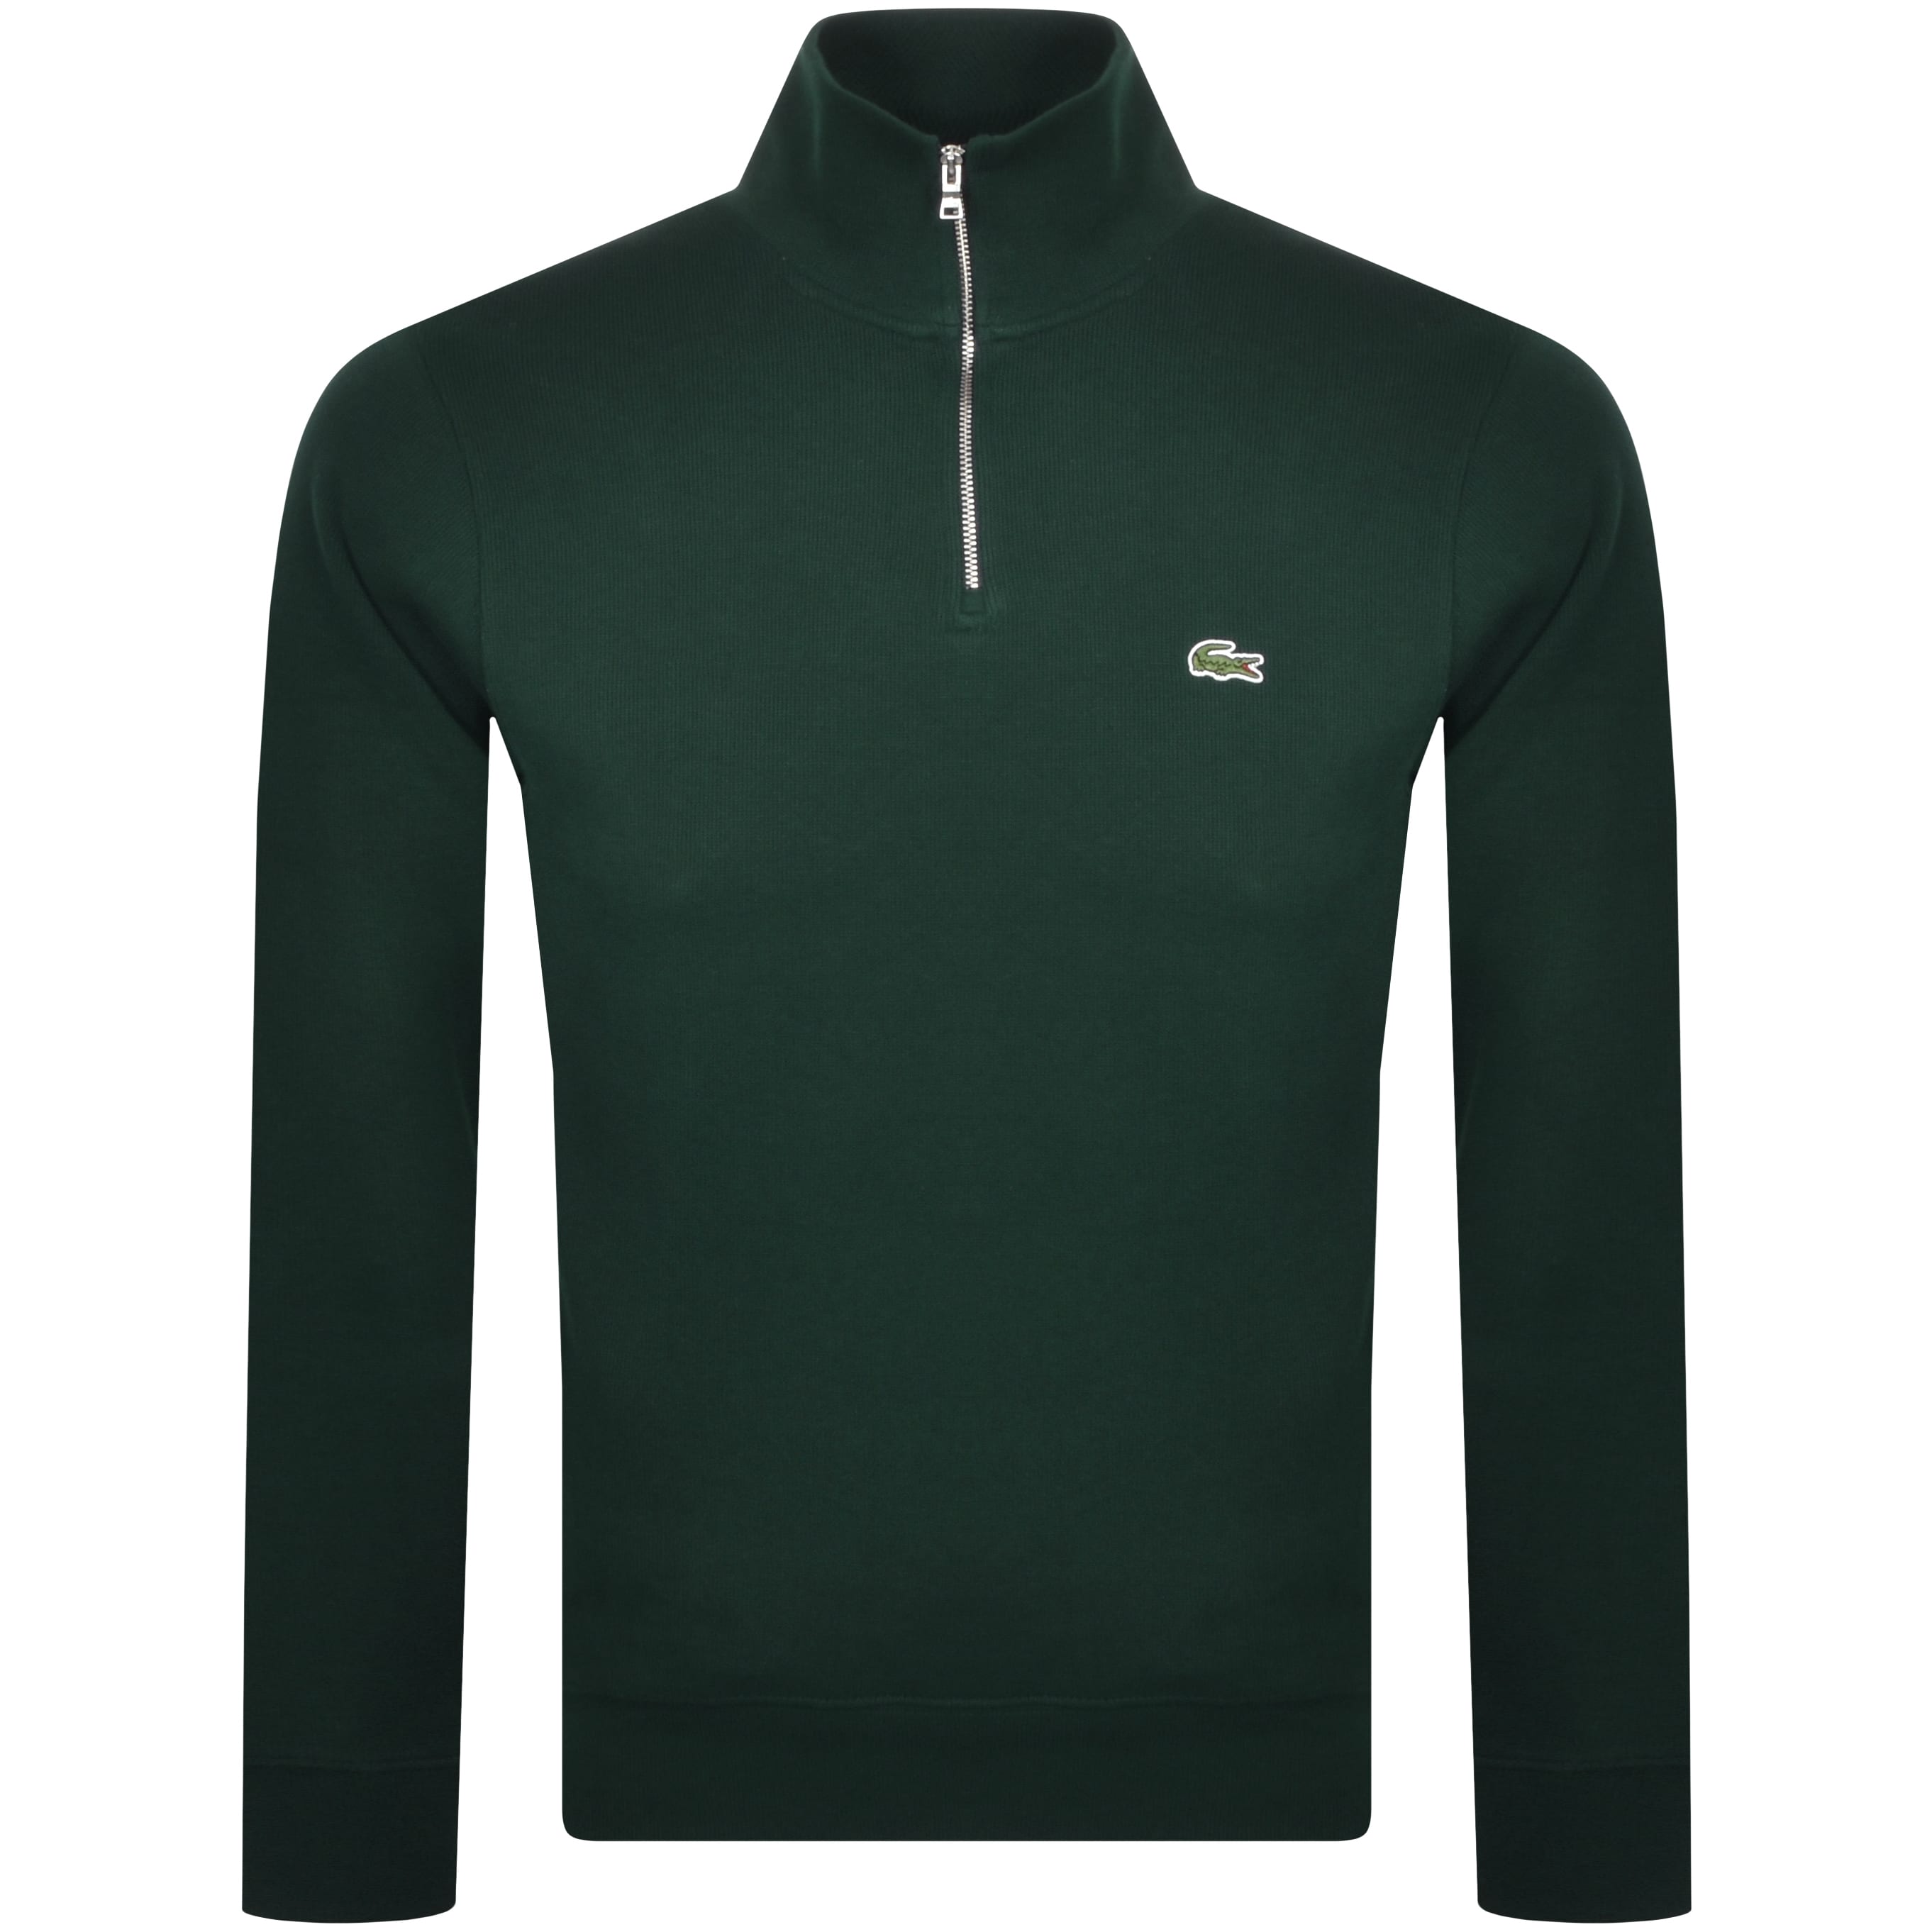 green lacoste sweatshirt